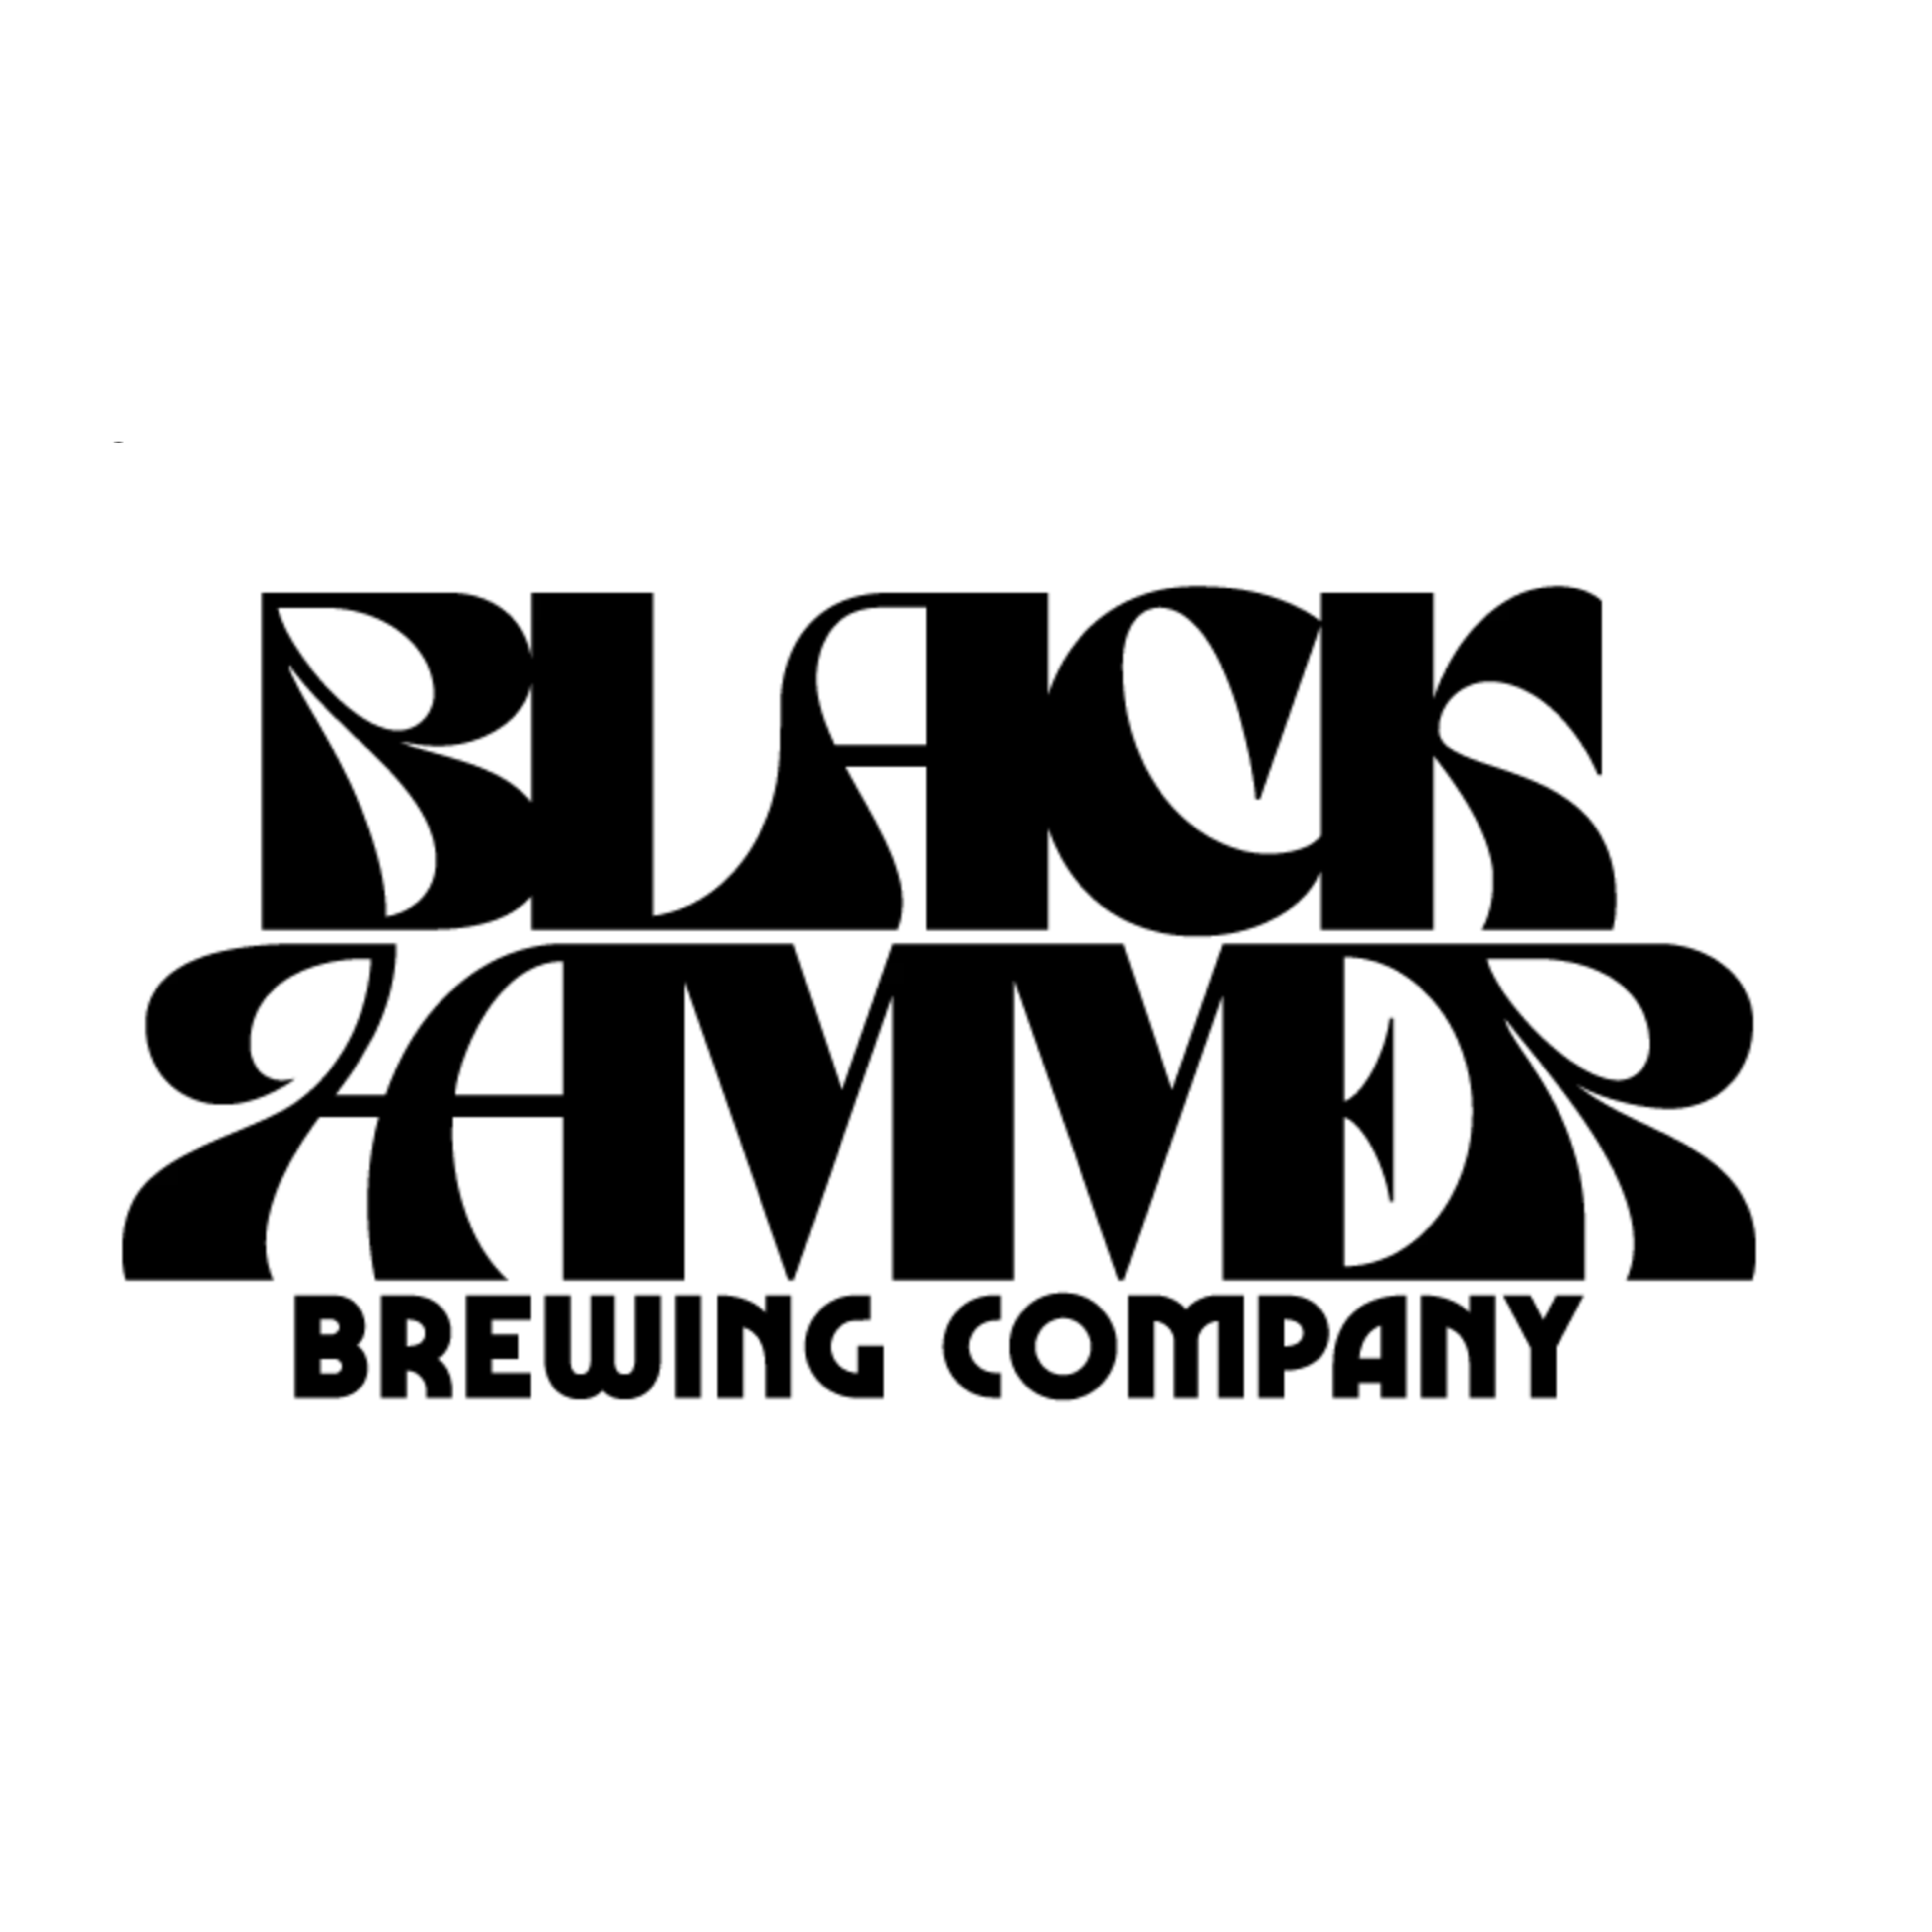 Black Hammer Brewing